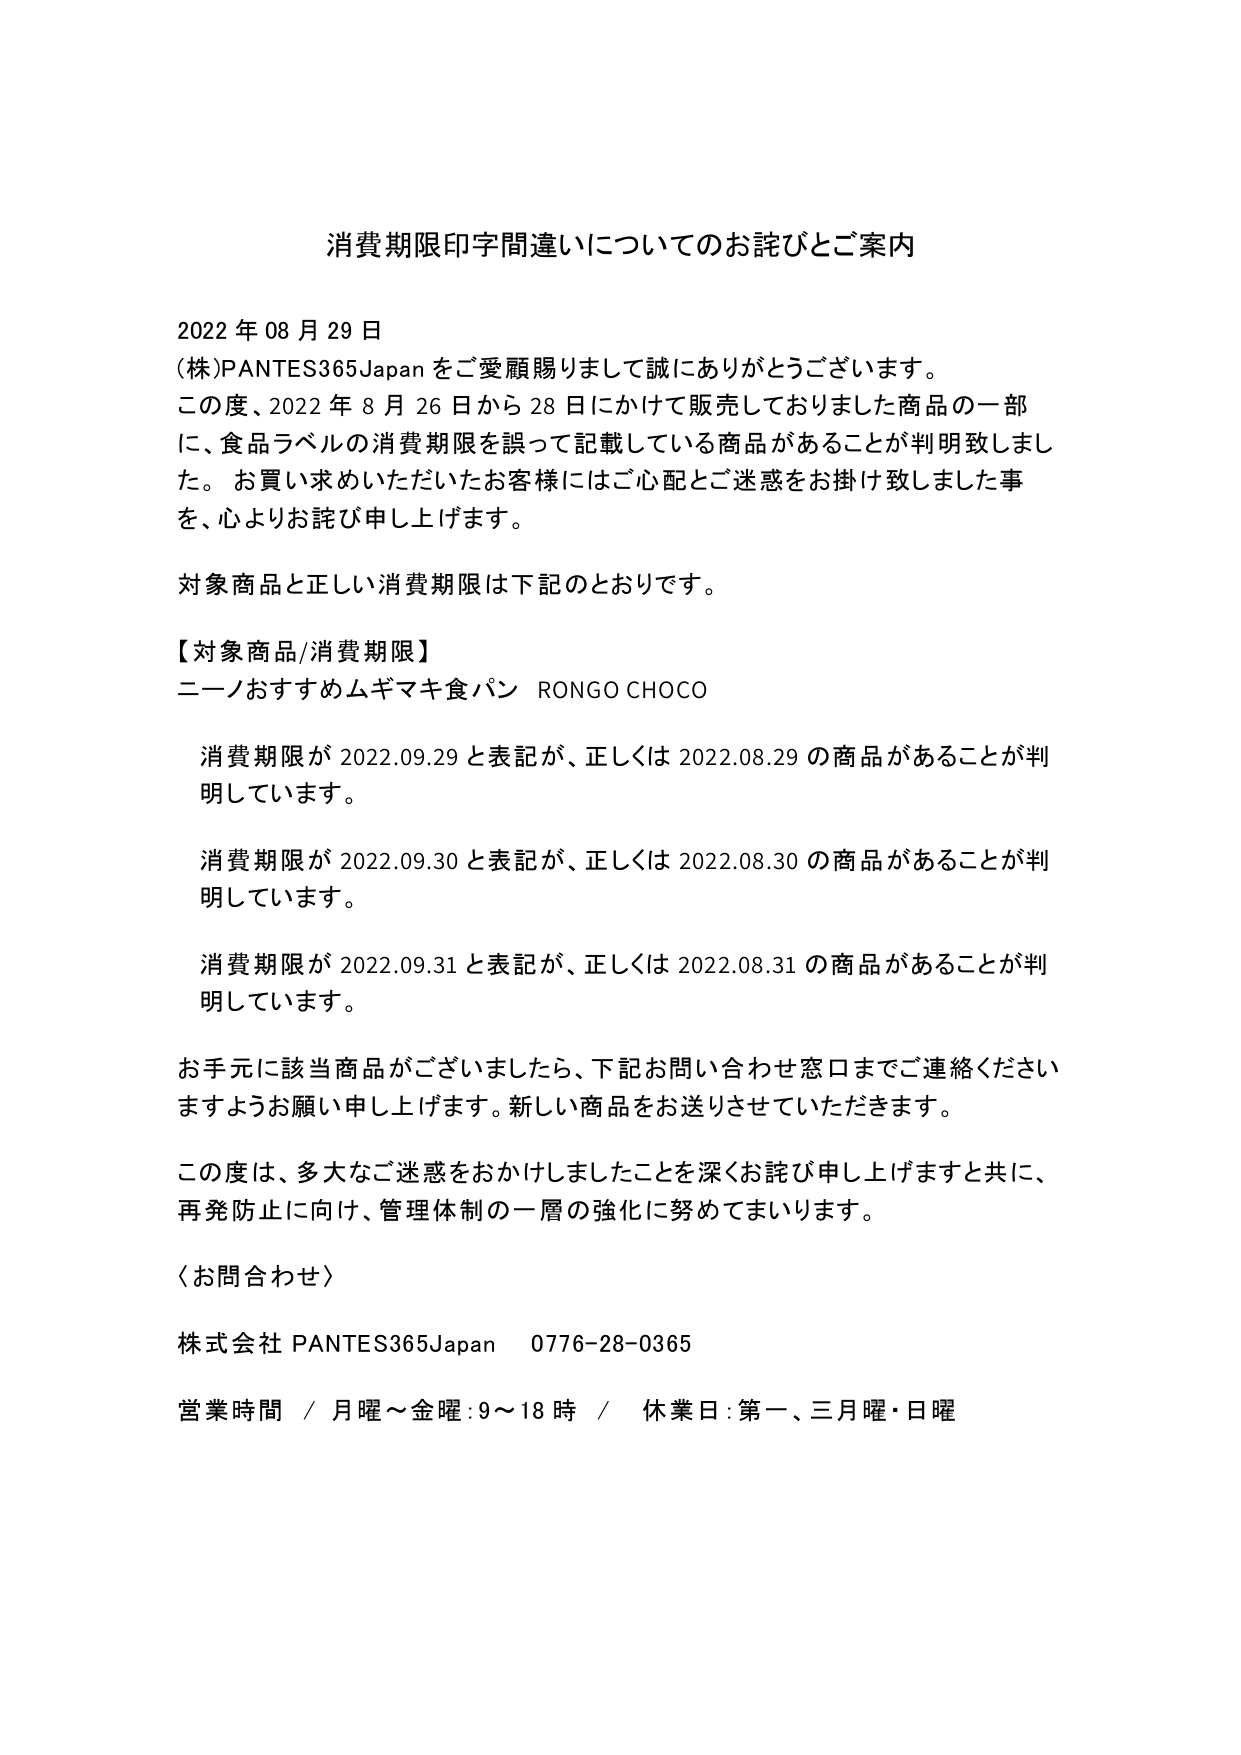 消費期限印字間違いについてのお詫びとご案内_page-0001 (1)